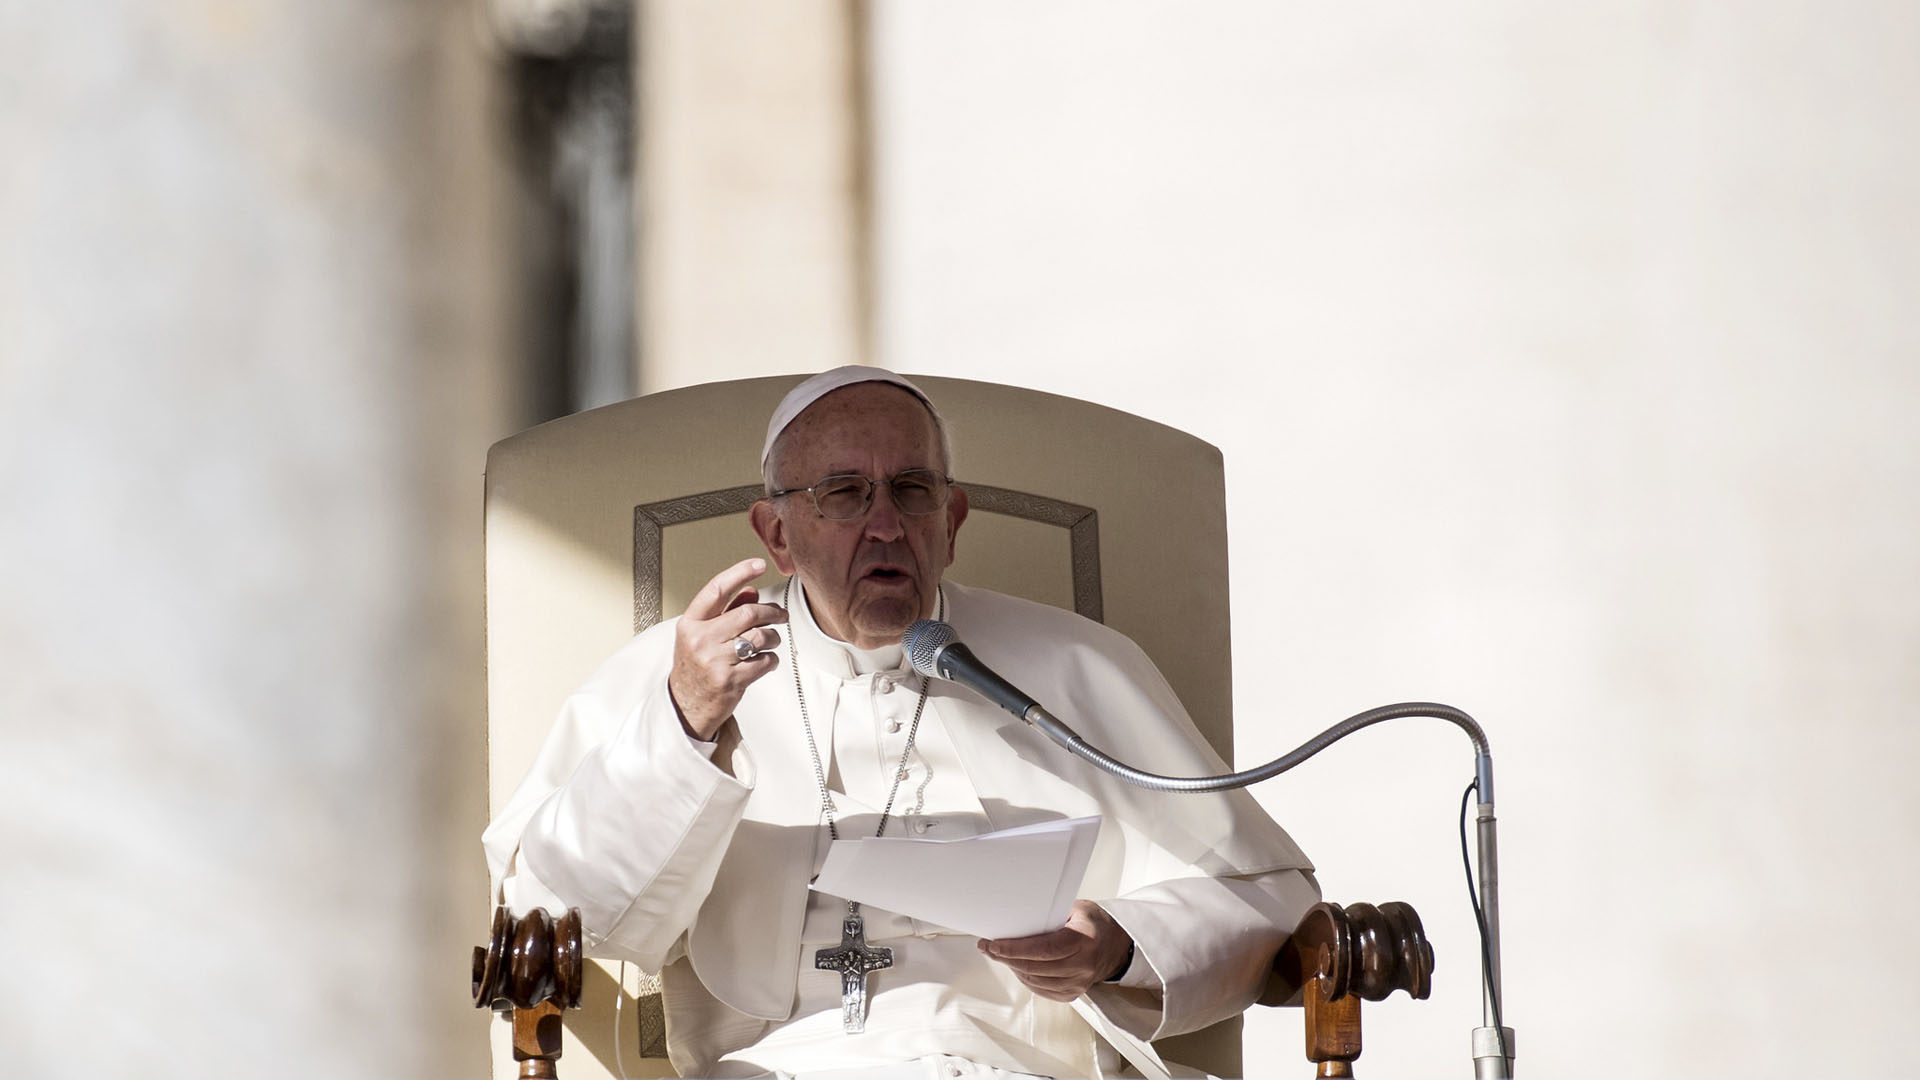 Le pape François a affirmé que l'Eglise doit prendre soin des pauvres. (Photo: Flickr/Mazur/catholicnews.org.uk/CC BY-NC-SA 2.0)